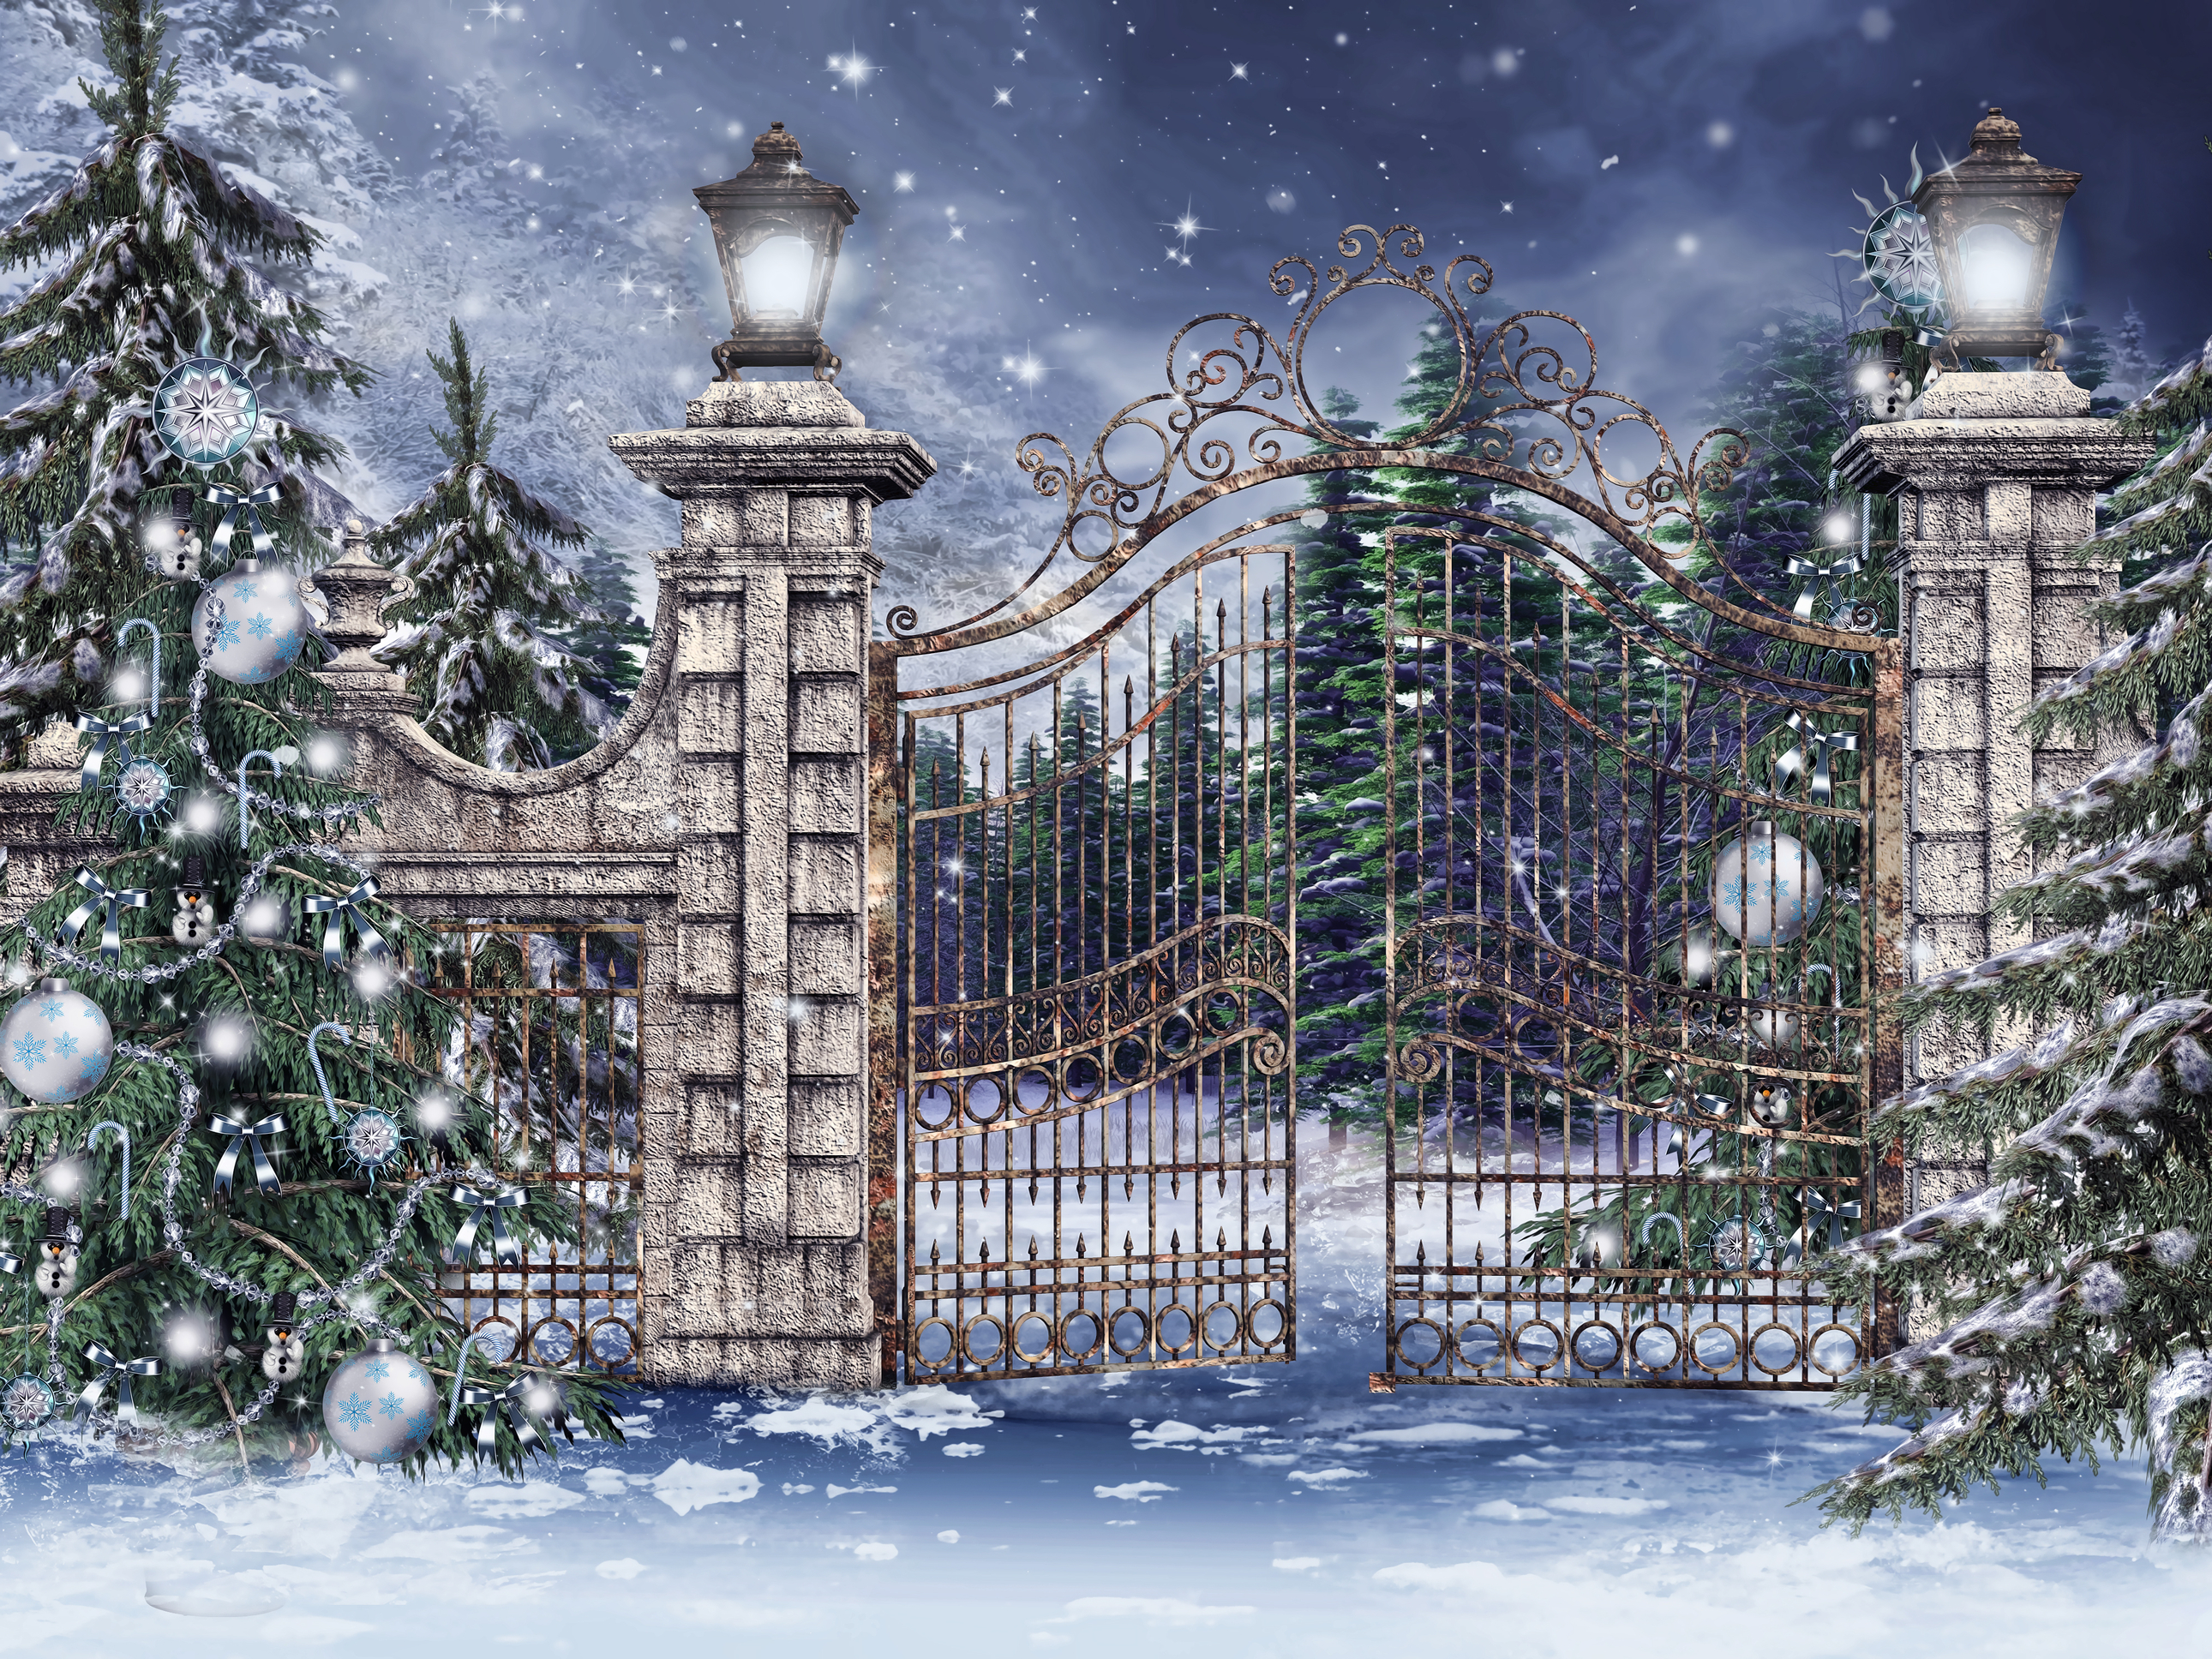 Скачать обои бесплатно Зима, Снег, Рождество, Рождественская Елка, Ворота, Художественные картинка на рабочий стол ПК